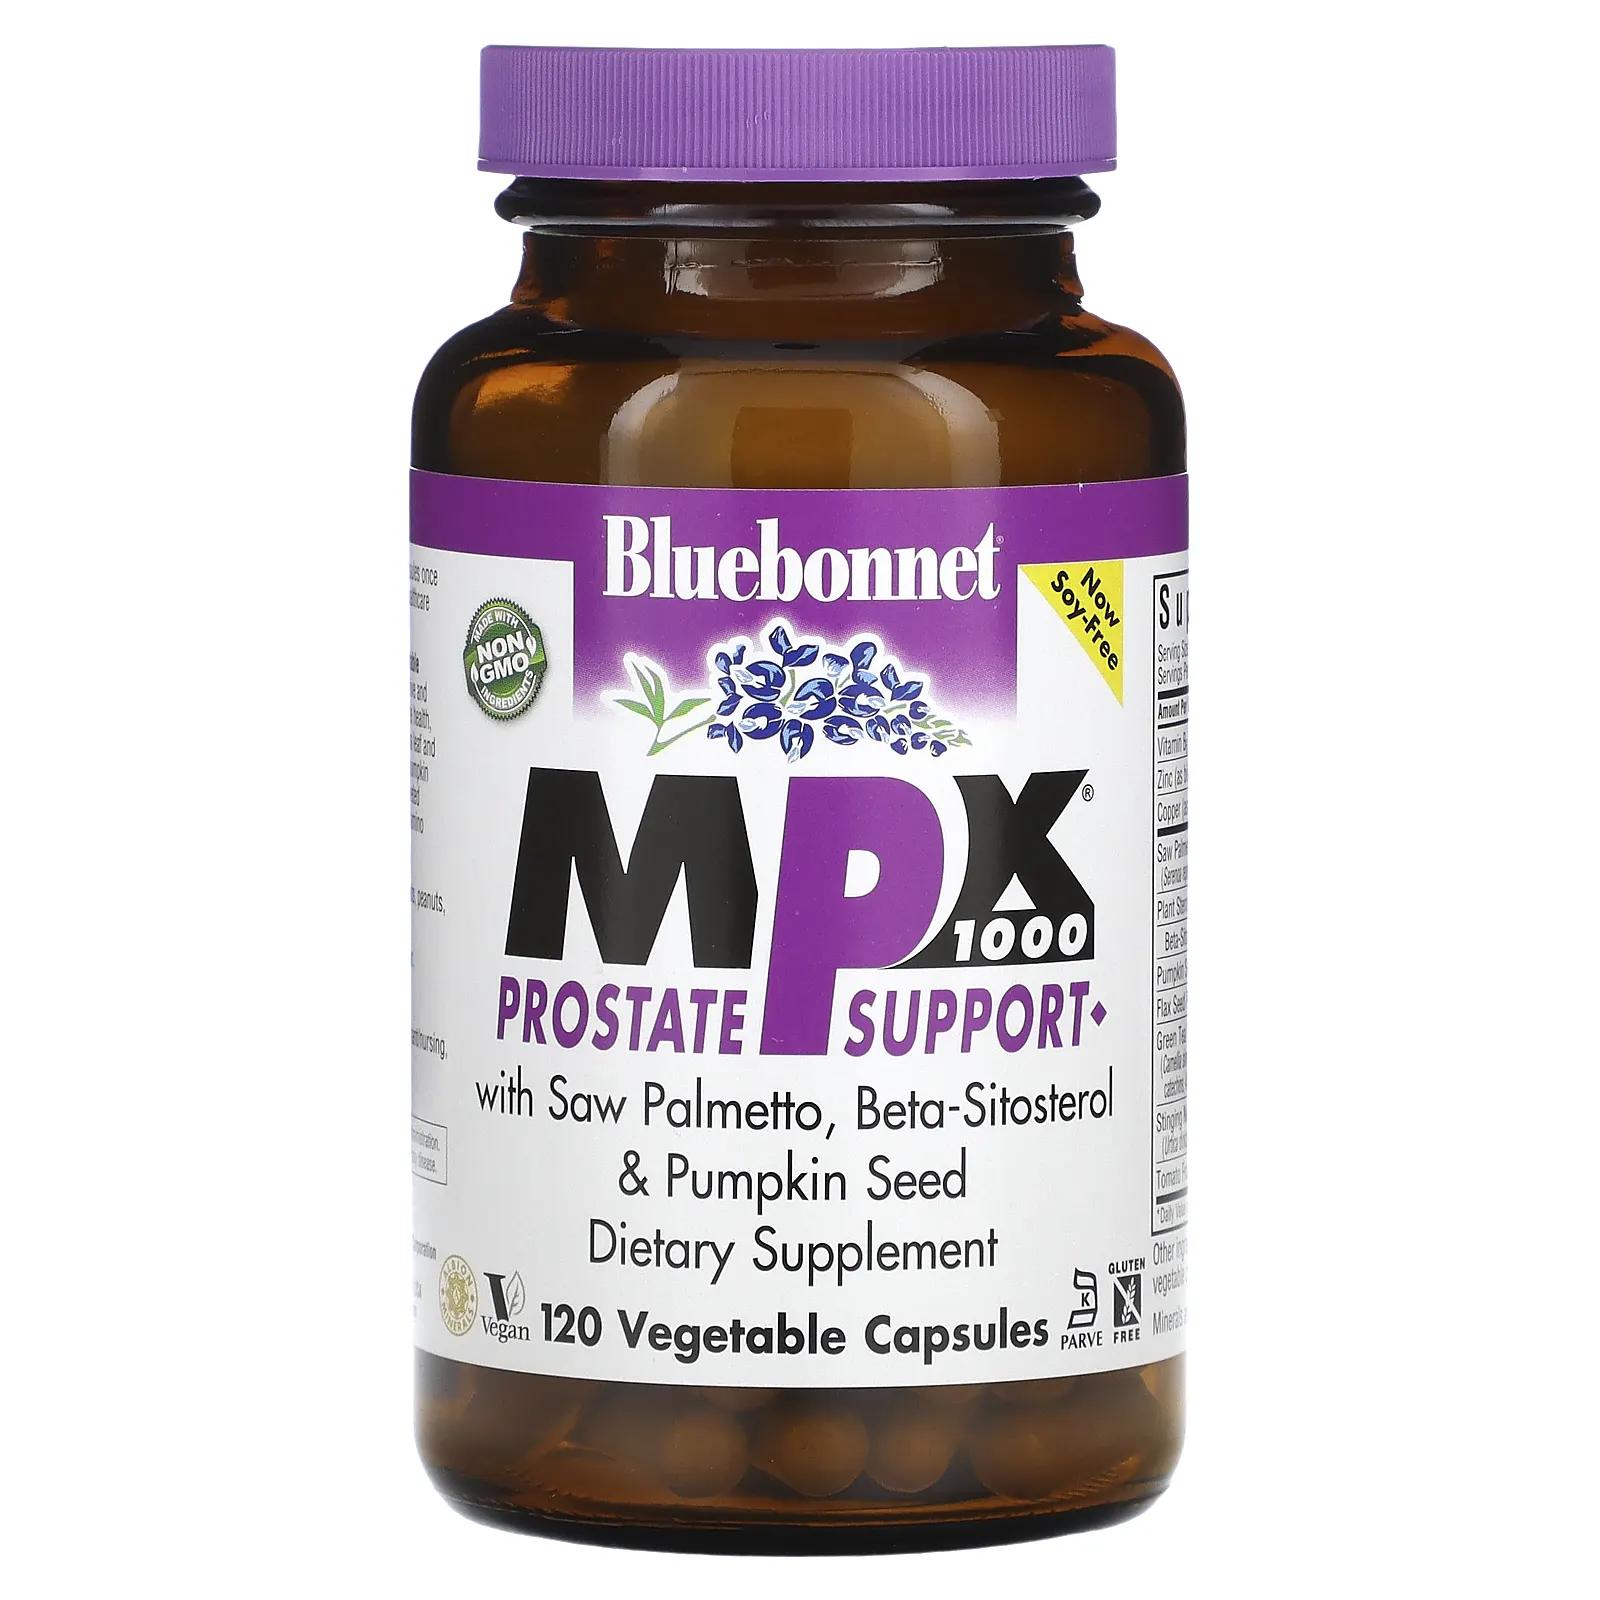 Bluebonnet Nutrition MPX 1000 поддержка предстательной железы 120 вегетарианских капсул mpx 1000 поддержка предстательной железы 120 капсул bluebonnet nutrition